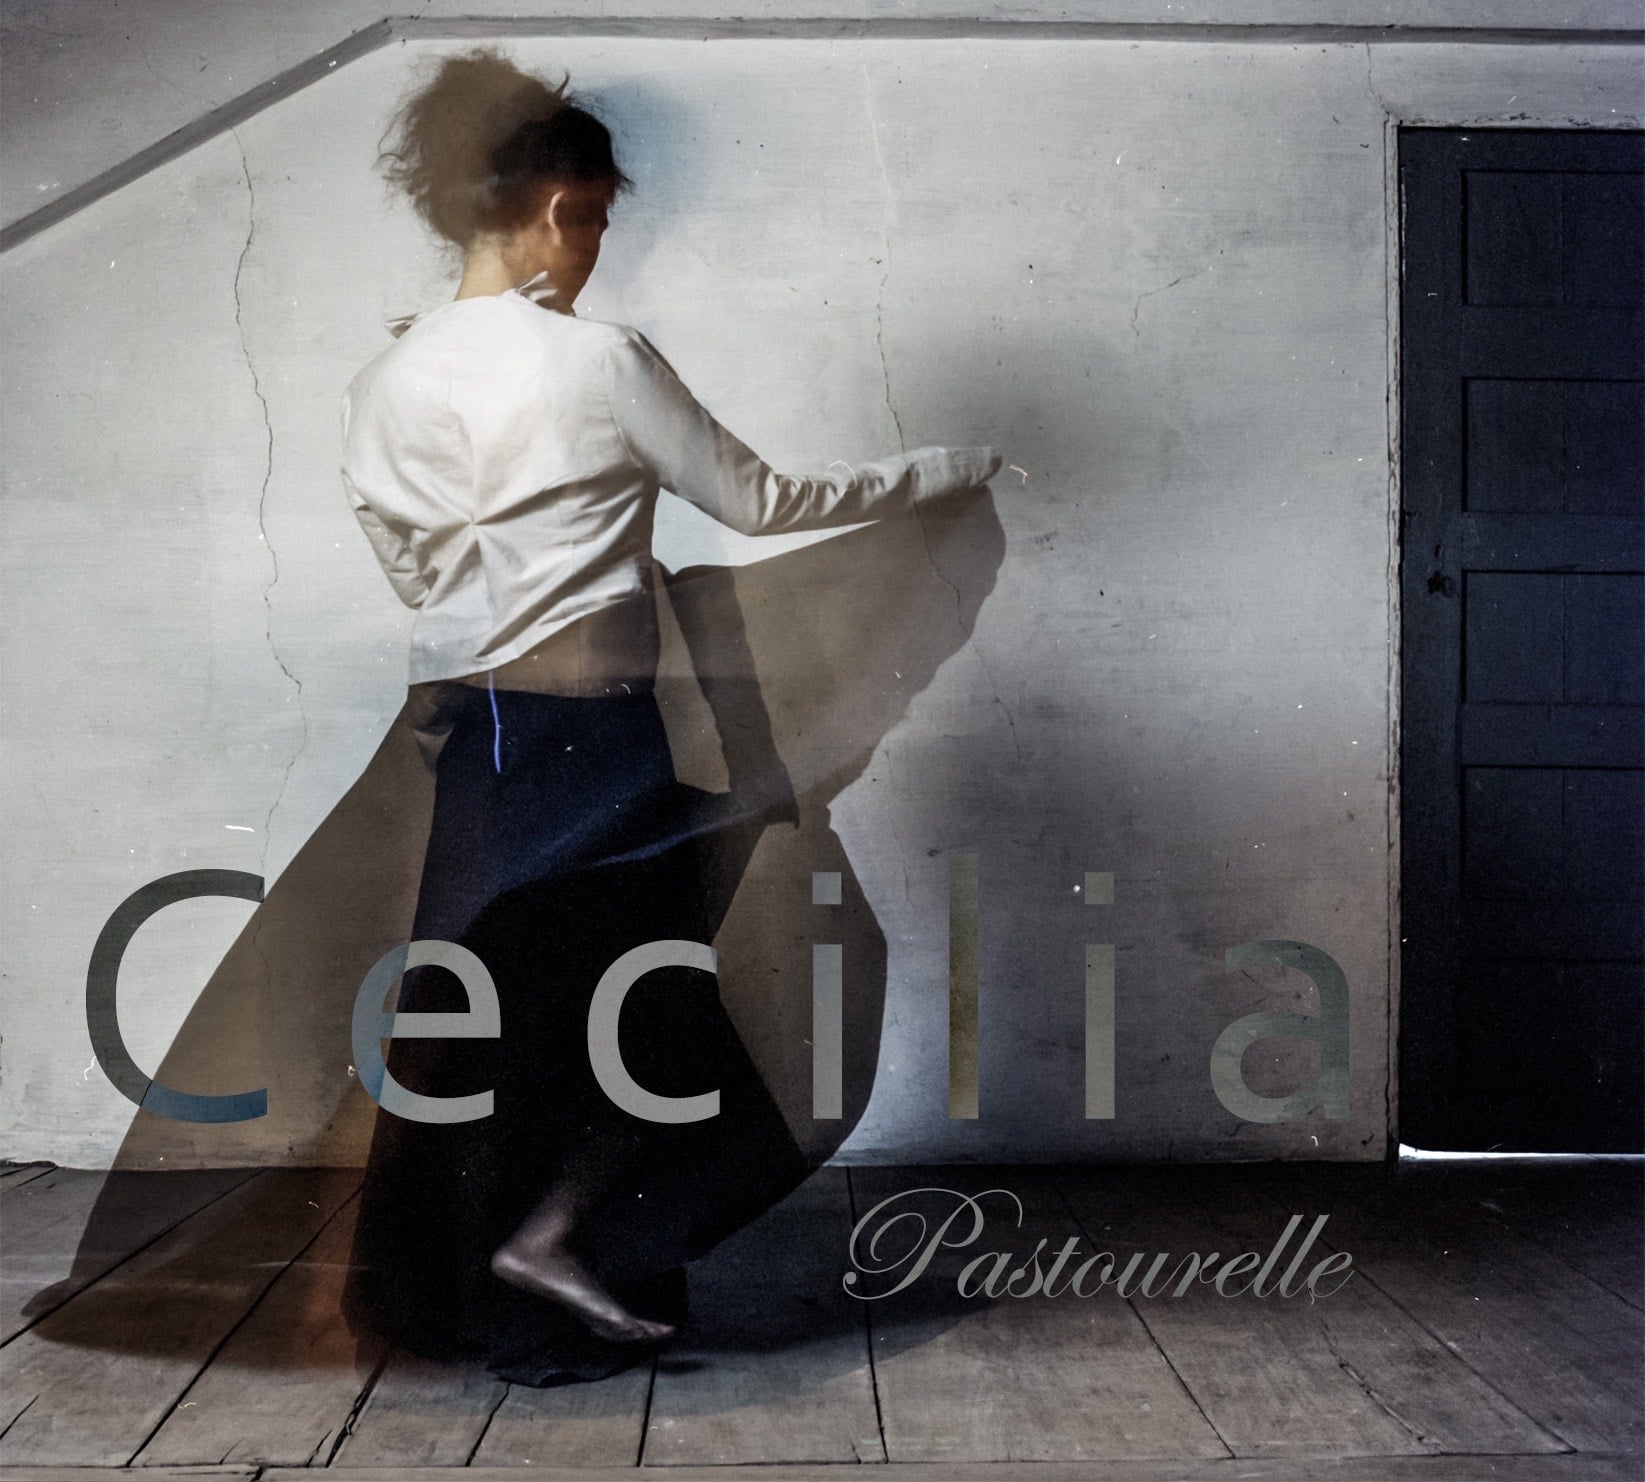 Protégé : CD Cecilia Pastourelle